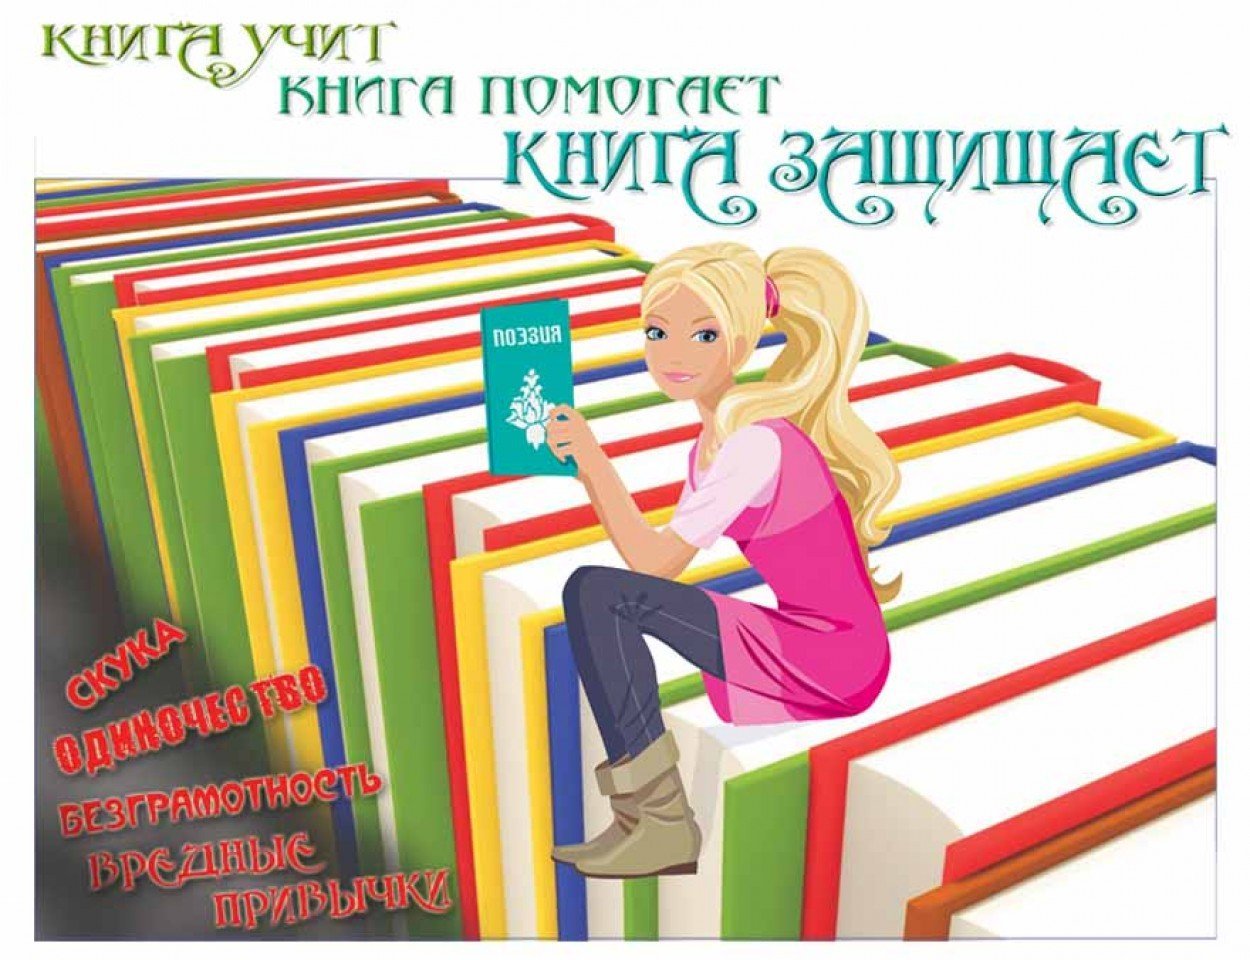 Читать книги ru book. Реклама книги. Реклама книг в библиотеке. Школьная библиотека. Чтение книг.